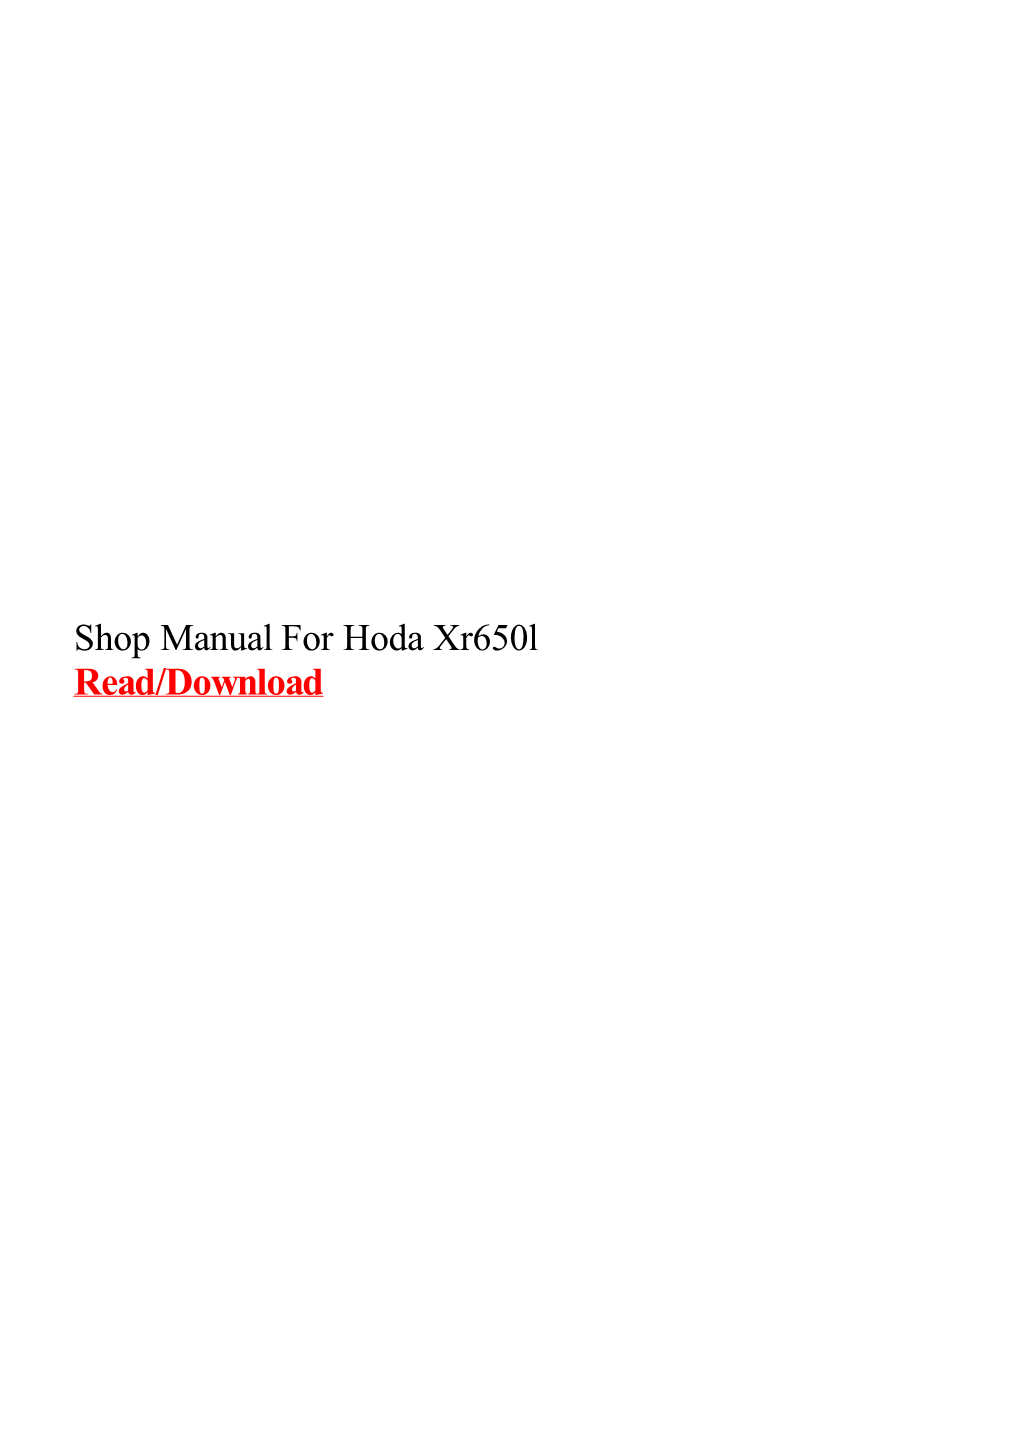 Shop Manual for Hoda Xr650l.Pdf